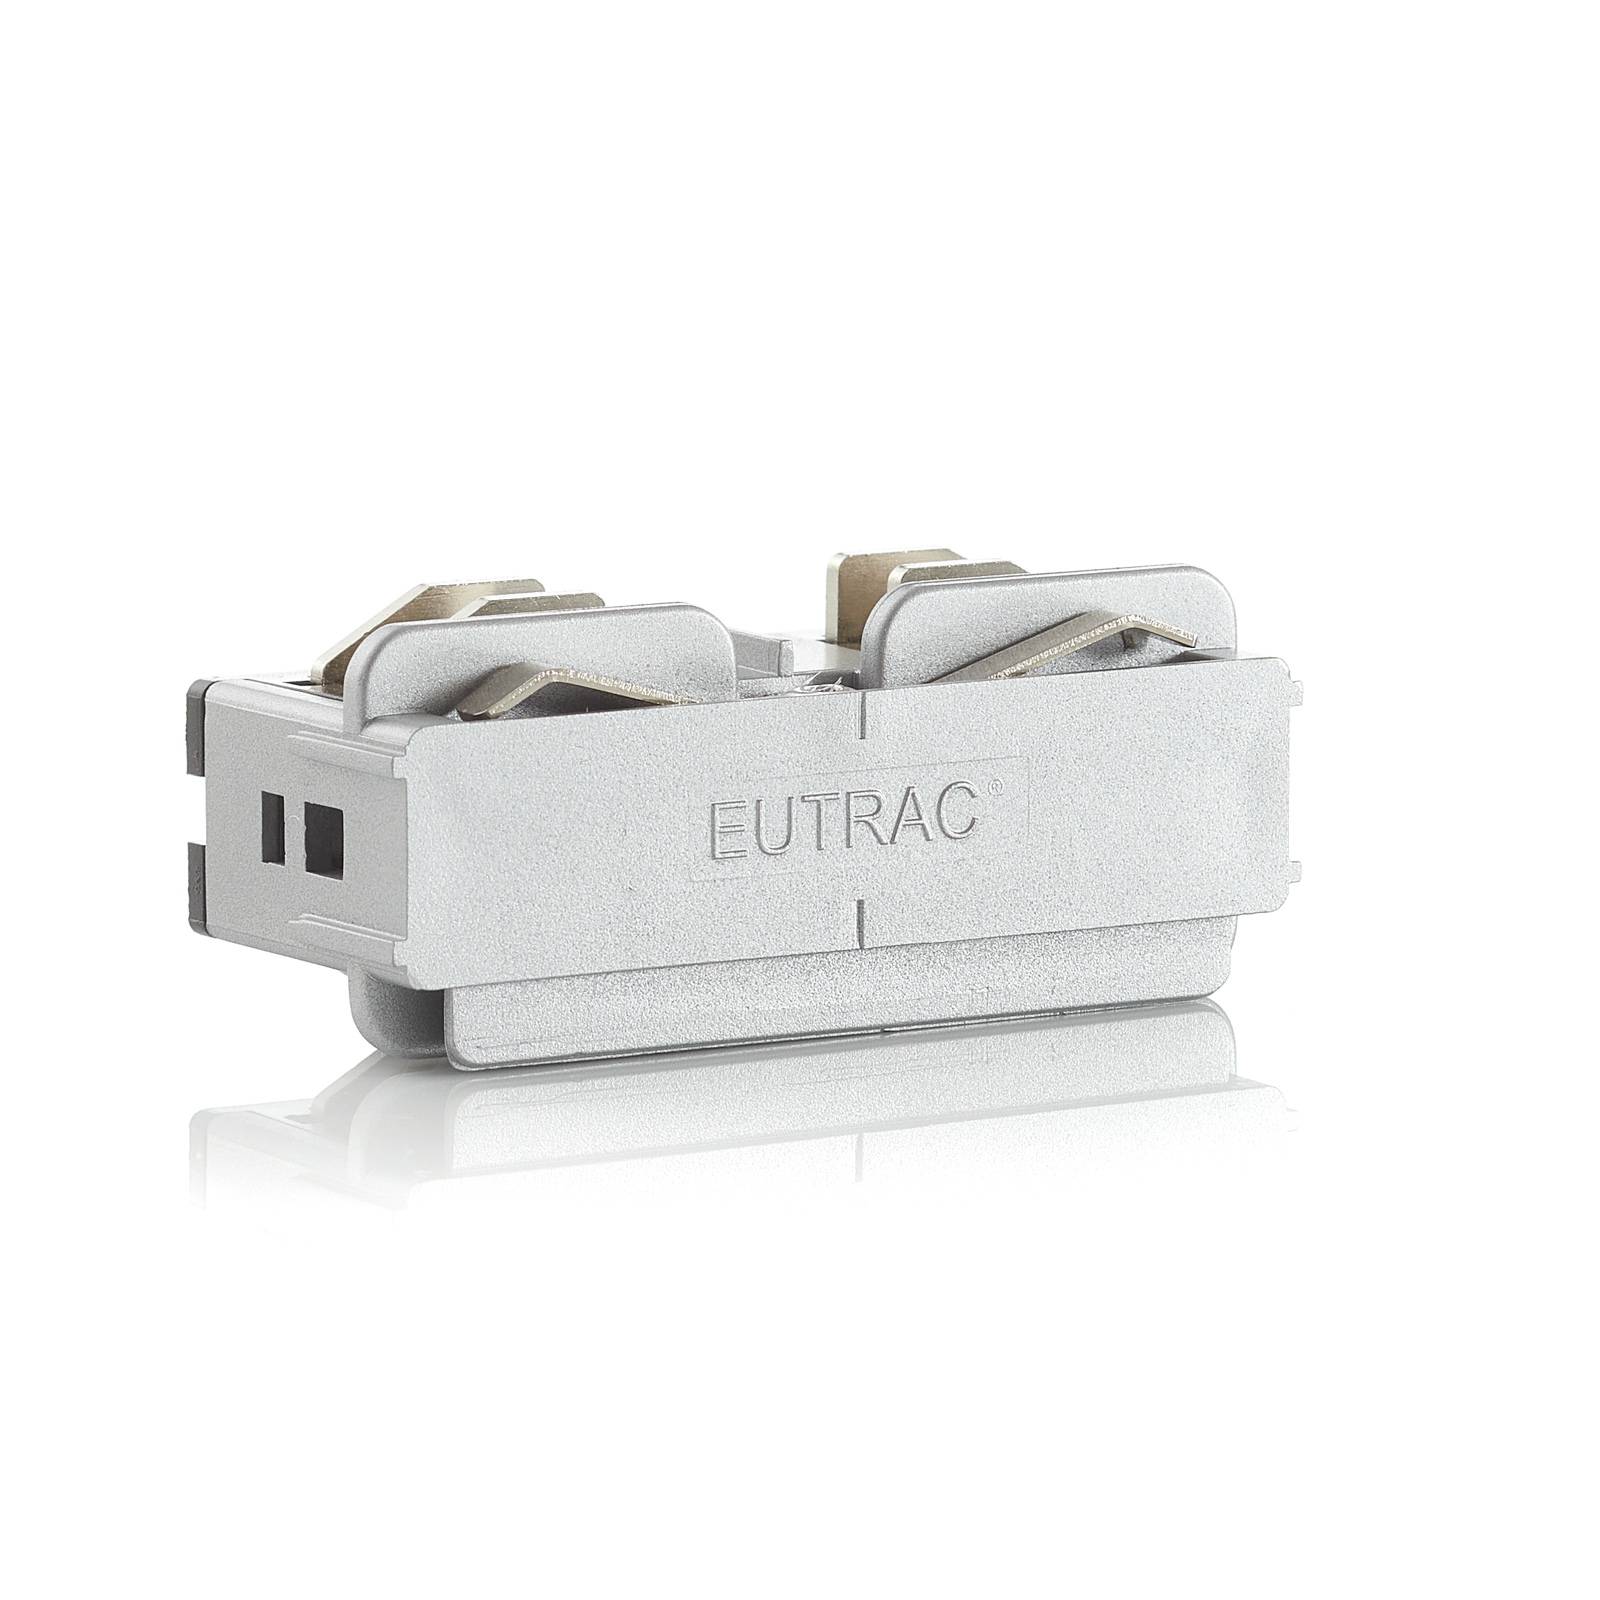 Eutrac connecteur électrique longitudinal 3 phases argenté